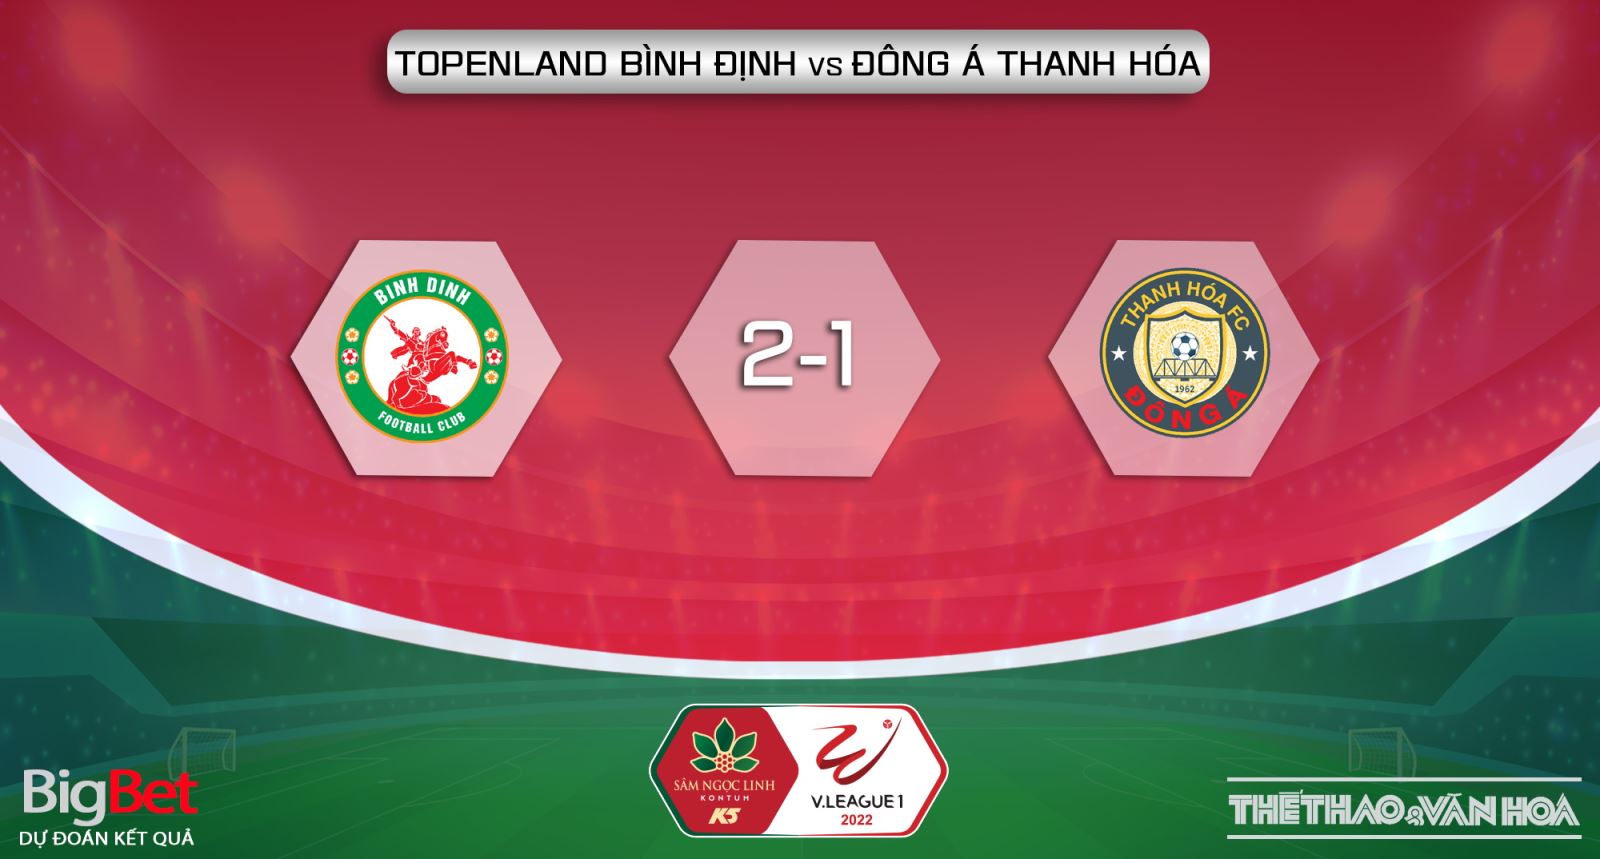 Bình Định vs Thanh Hóa, nhận định kết quả, nhận định bóng đá Bình Định vs Thanh Hóa, nhận định bóng đá, Bình Định, Thanh Hóa, keo nha cai, dự đoán bóng đá, V-League 2022, nhận định bóng đá